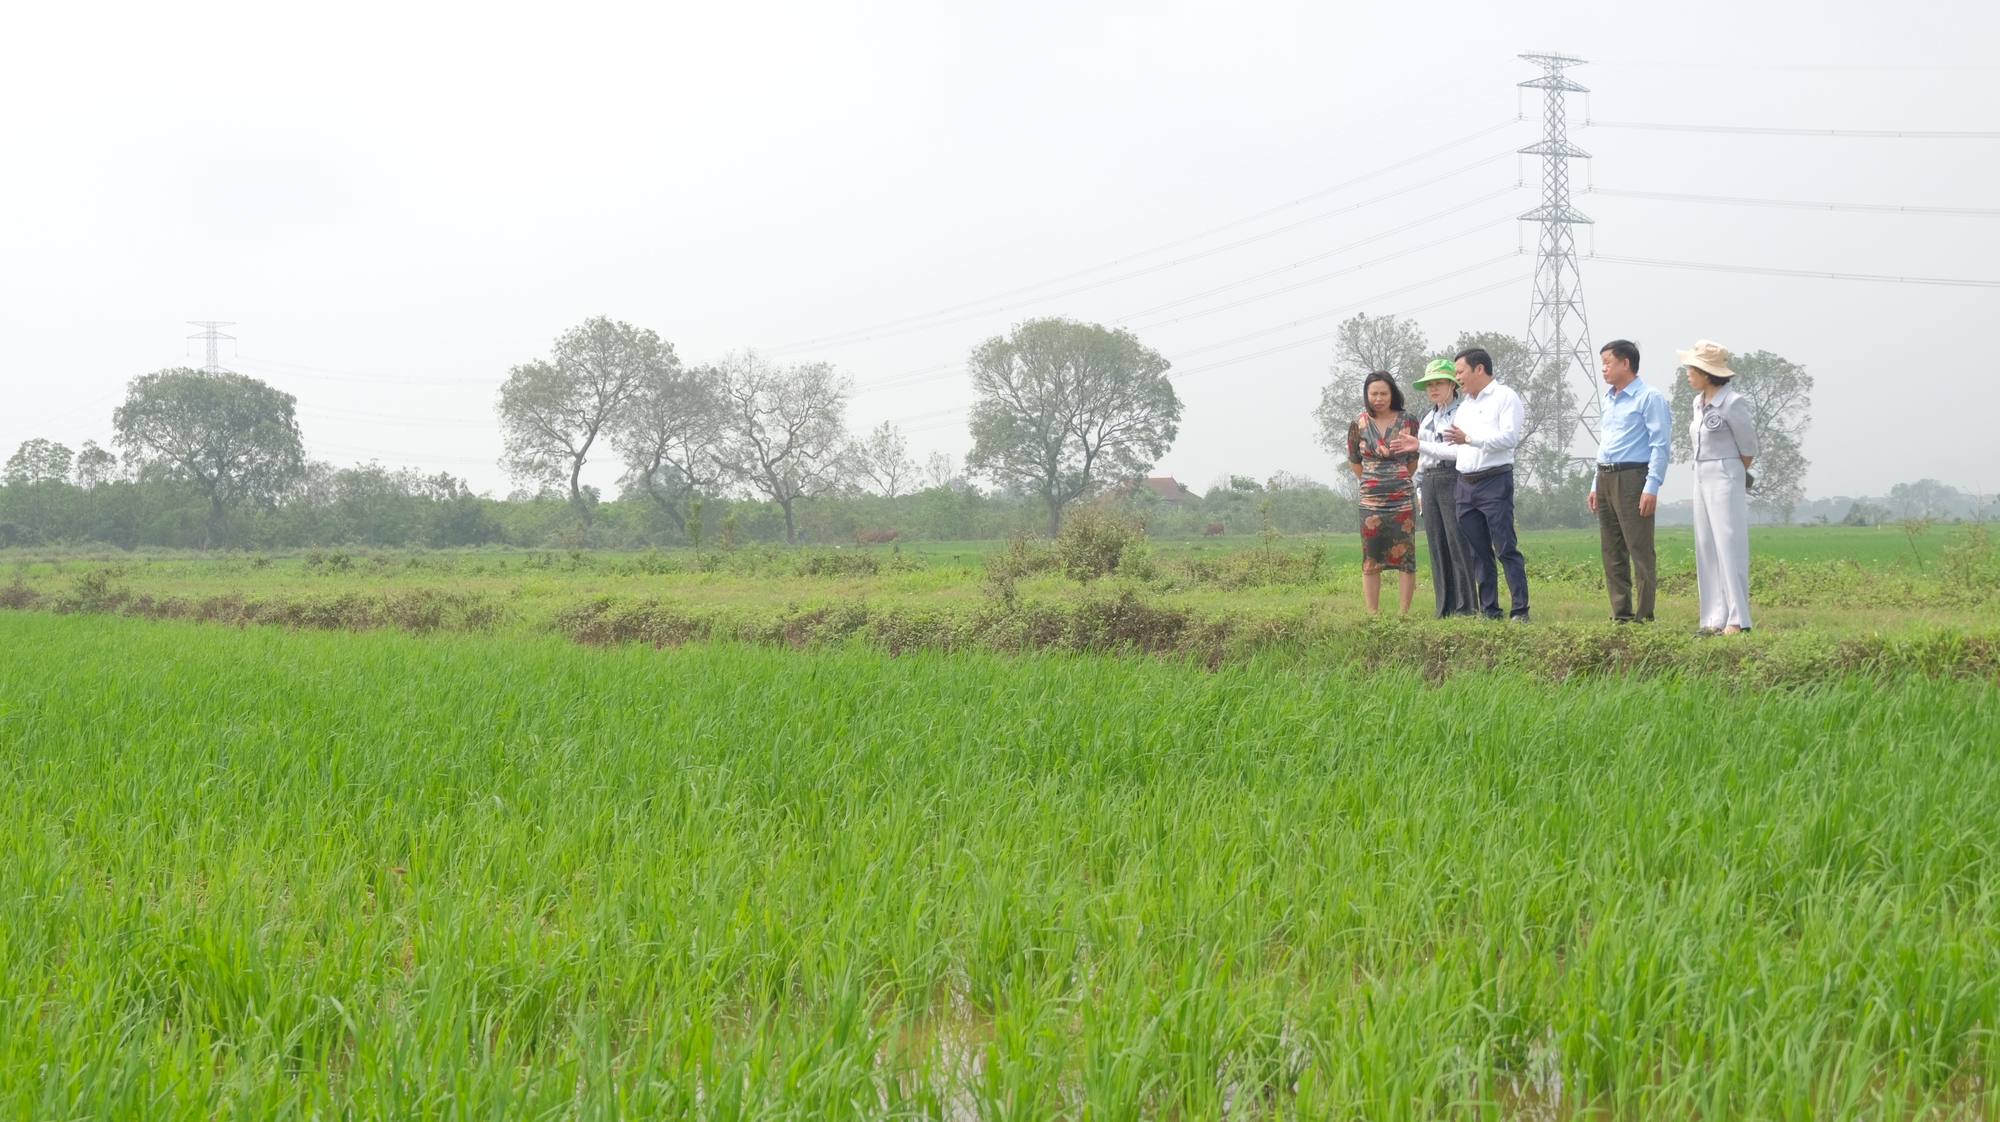 Tập trung ruộng đất - nhìn từ mô hình lúa hữu cơ tại Hà Nội - Ảnh 1.